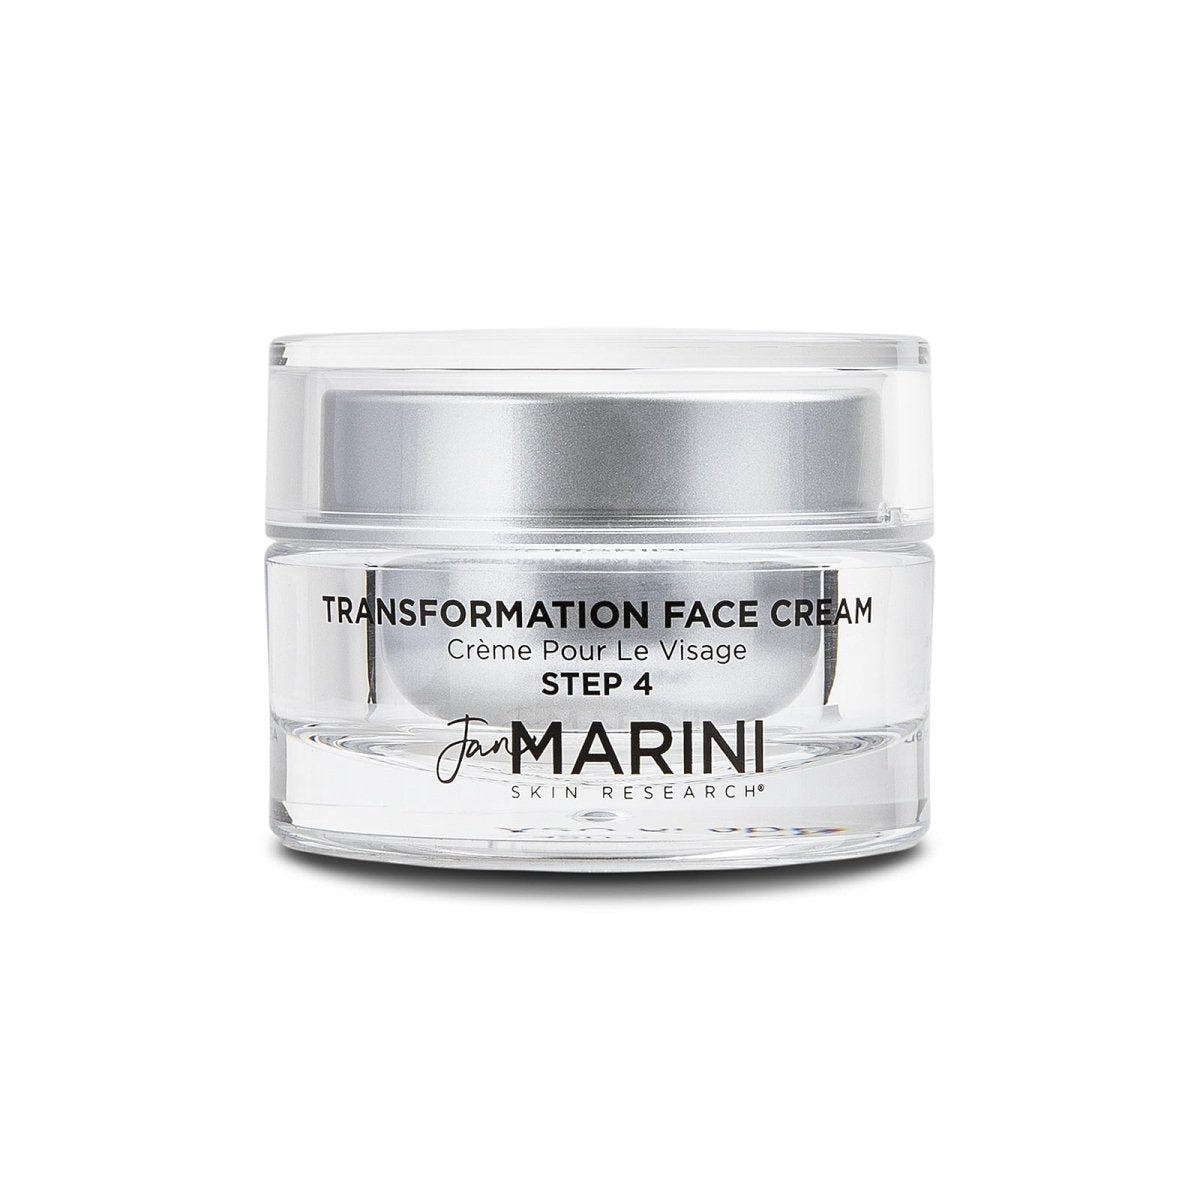 Jan Marini Transformation Face Cream - SkincareEssentials